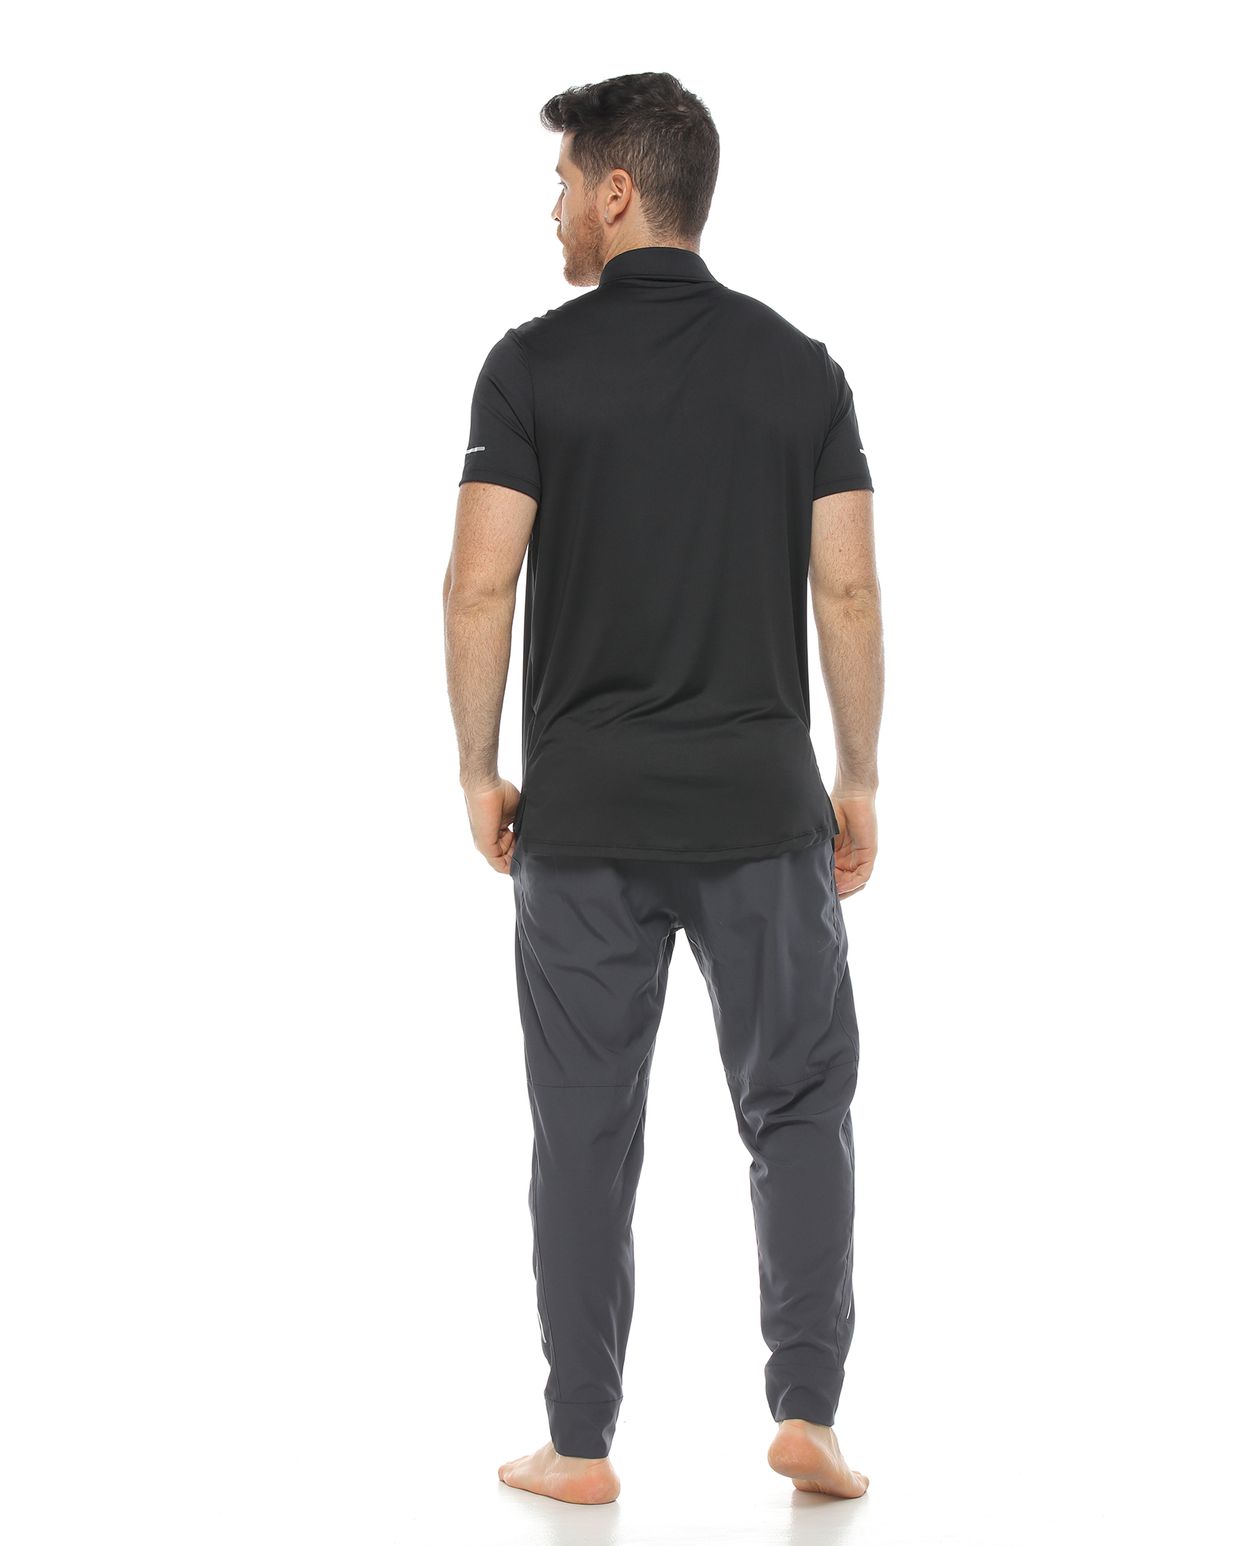 modelo con Camiseta estilo Polo negra y pantalon deportivo para Hombre parte trasera